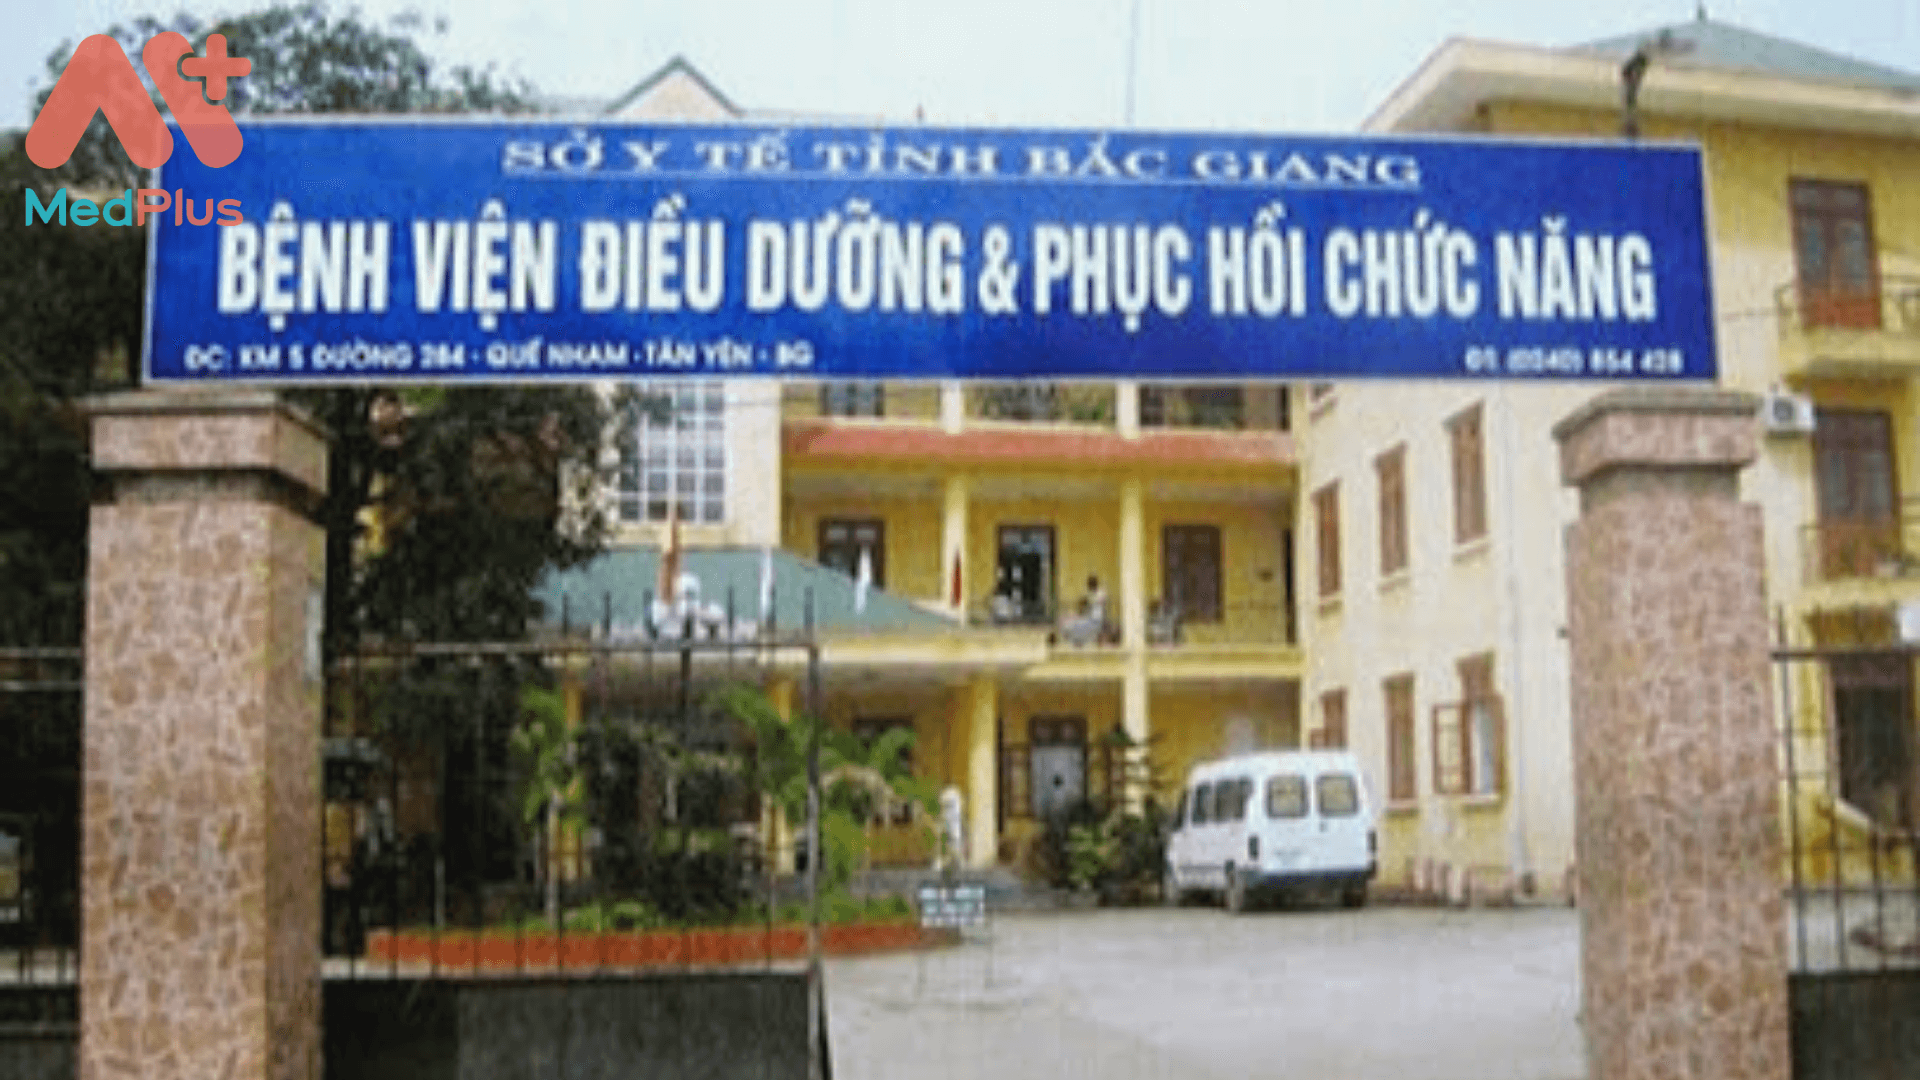 Bệnh viện Phục hồi chức năng tỉnh Bắc Giang